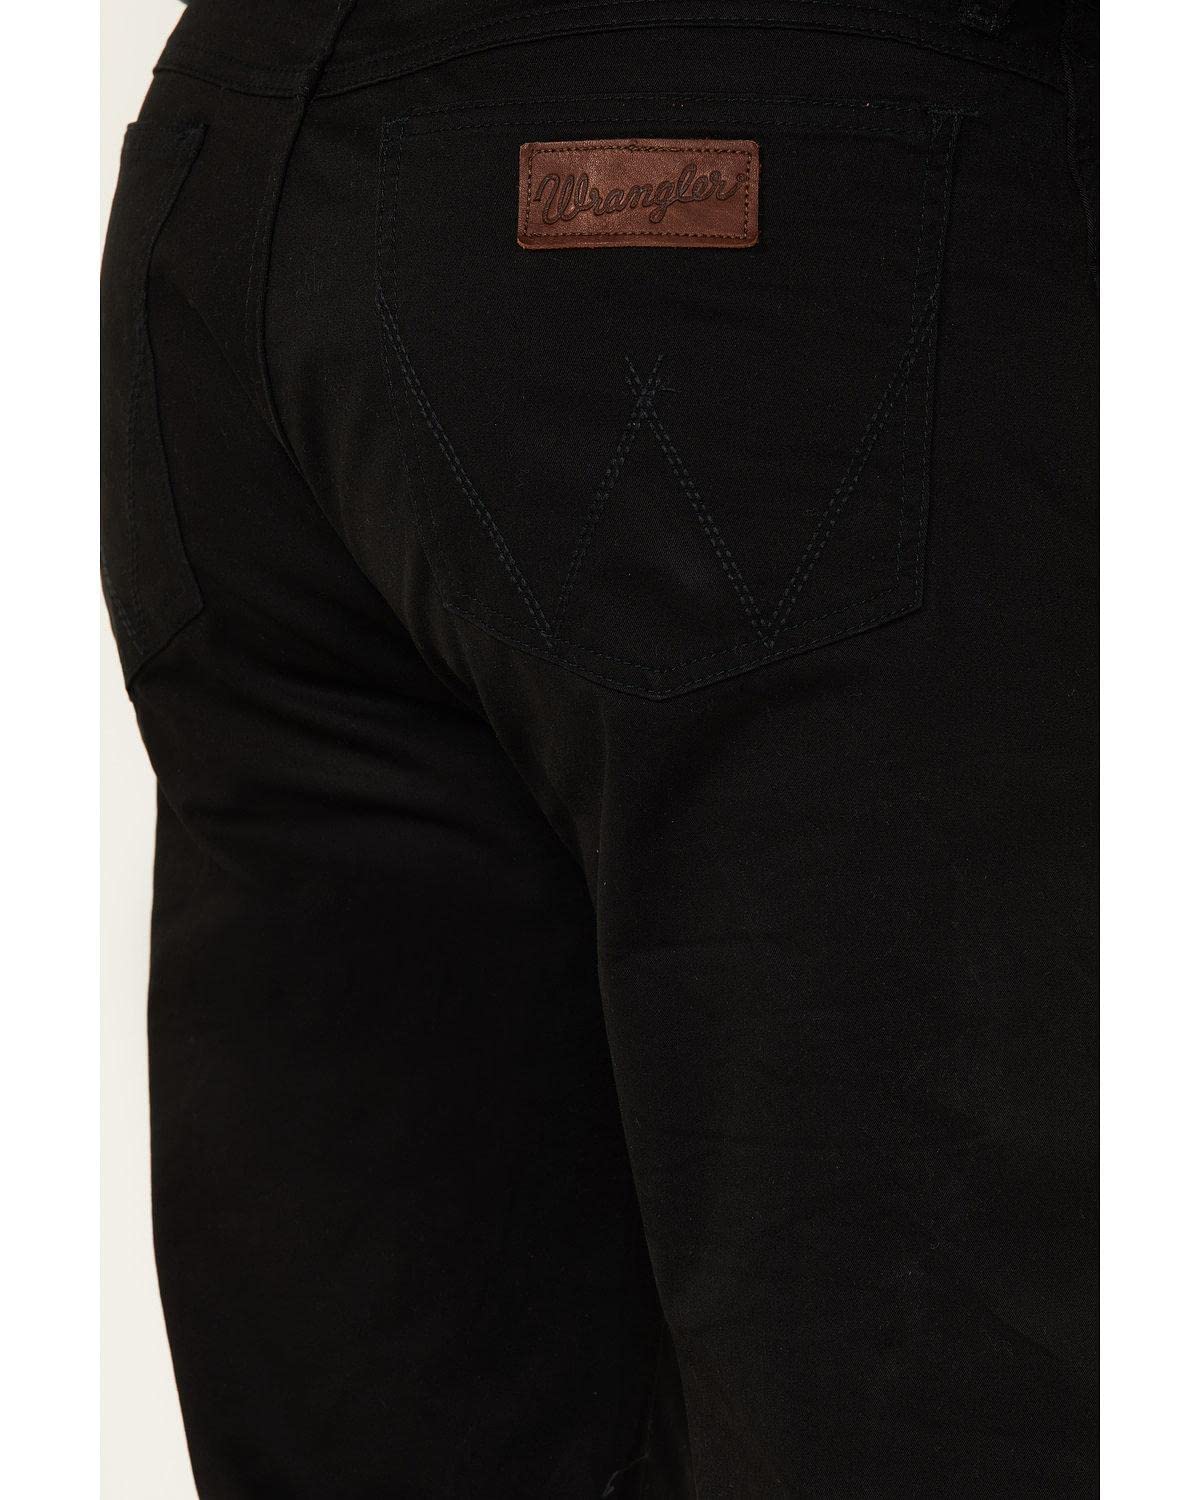 Wrangler Men's Retro Slim Fit Straight Leg Jean, Black, 36W x 30L